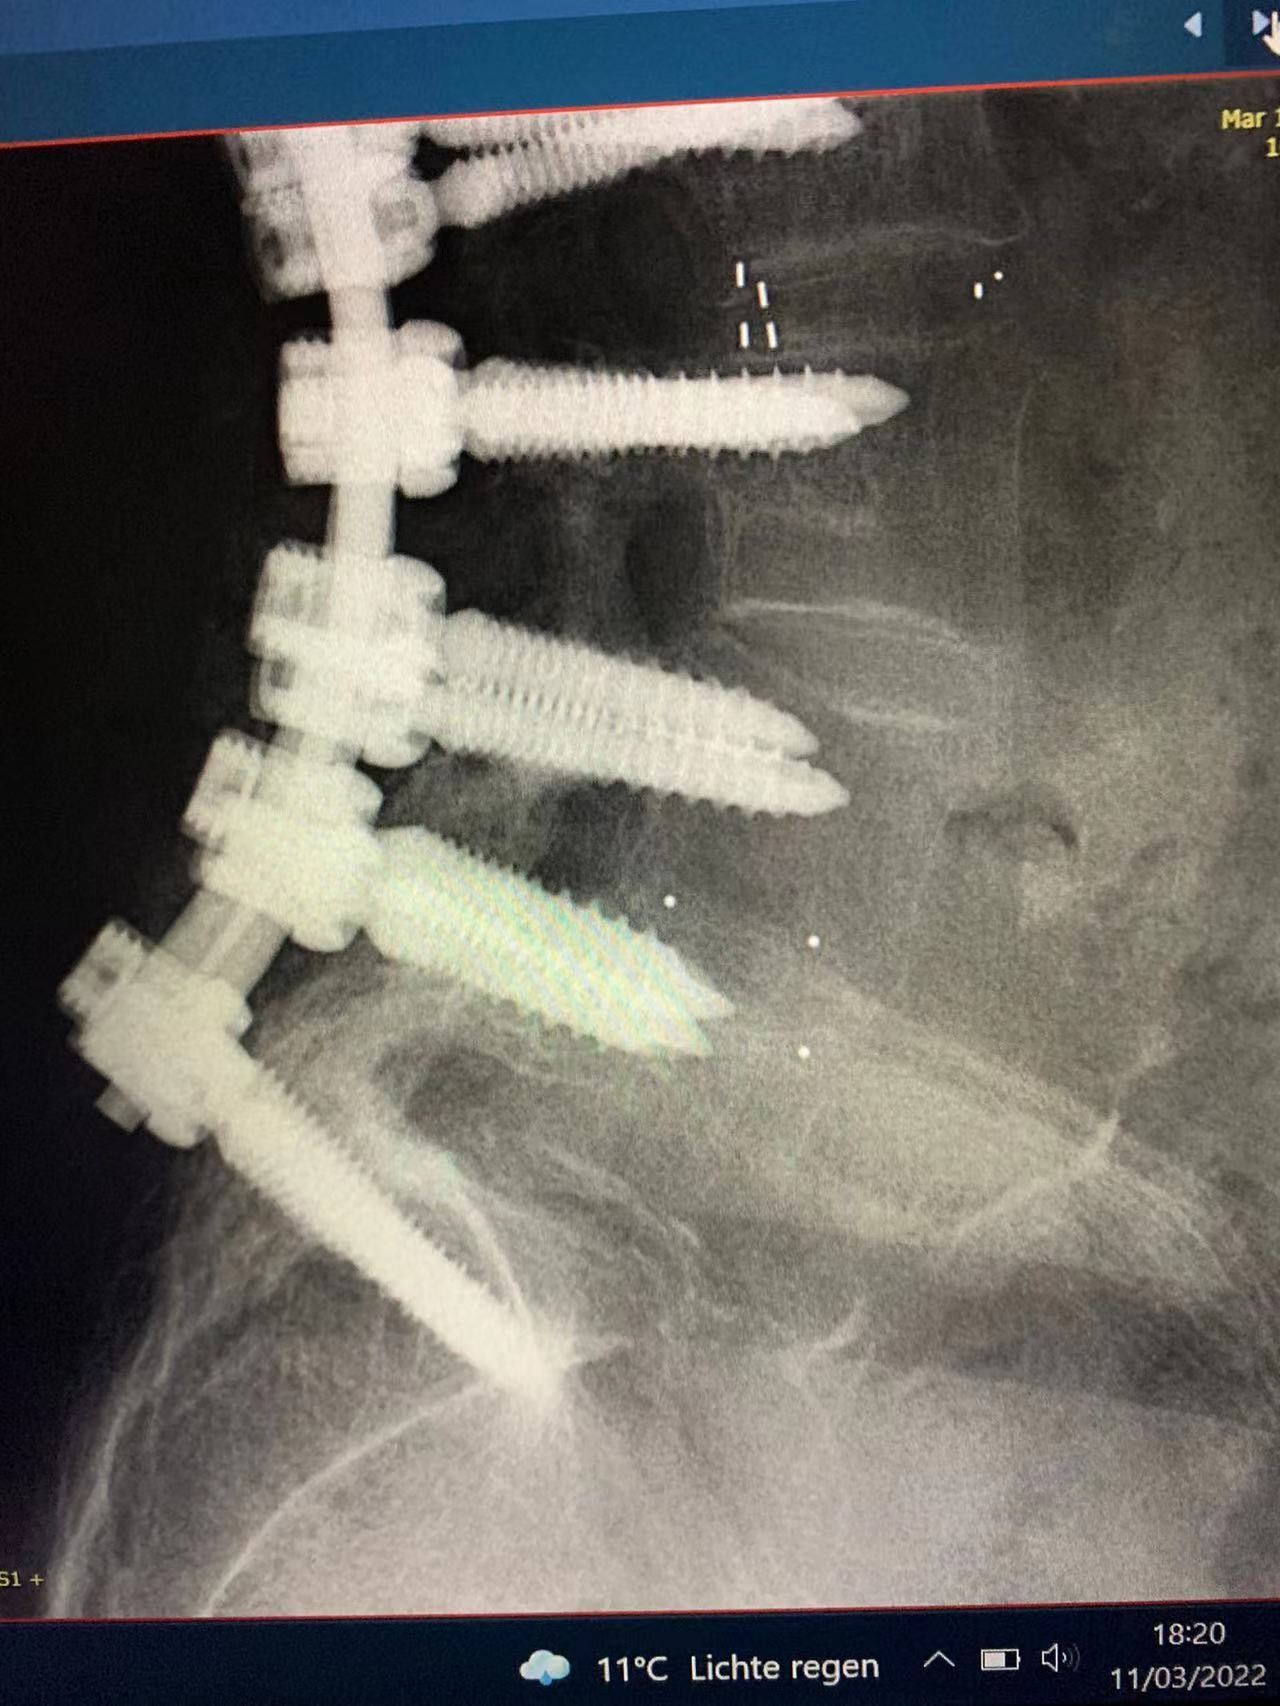 mais recente caso da empresa sobre Fixação interna cirúrgica espinal bem sucedida